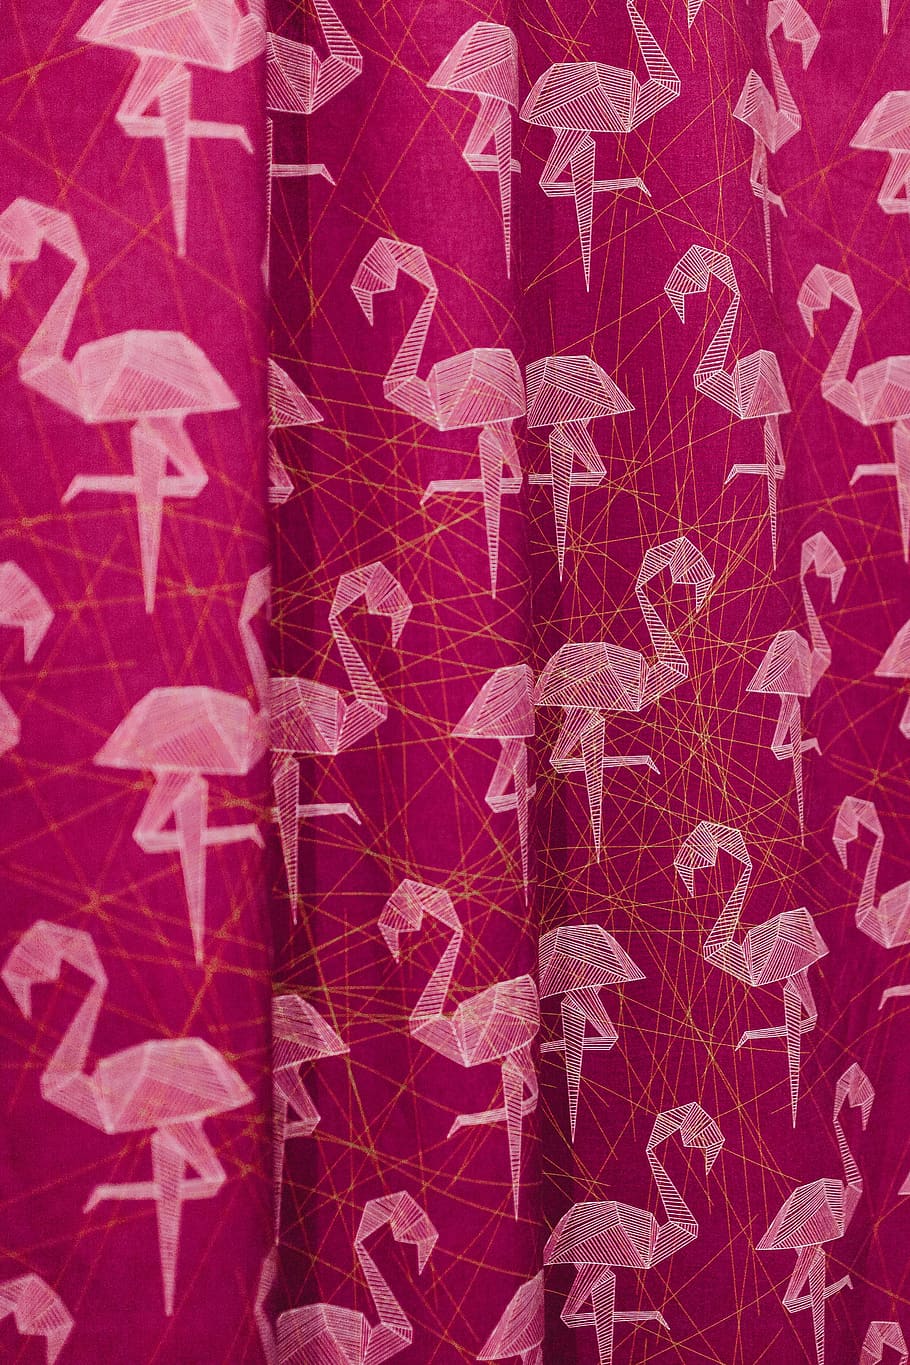 material, rosa, flamingo, tecido, quadro completo, planos de fundo, padrão, close-up, sem pessoas, vermelho